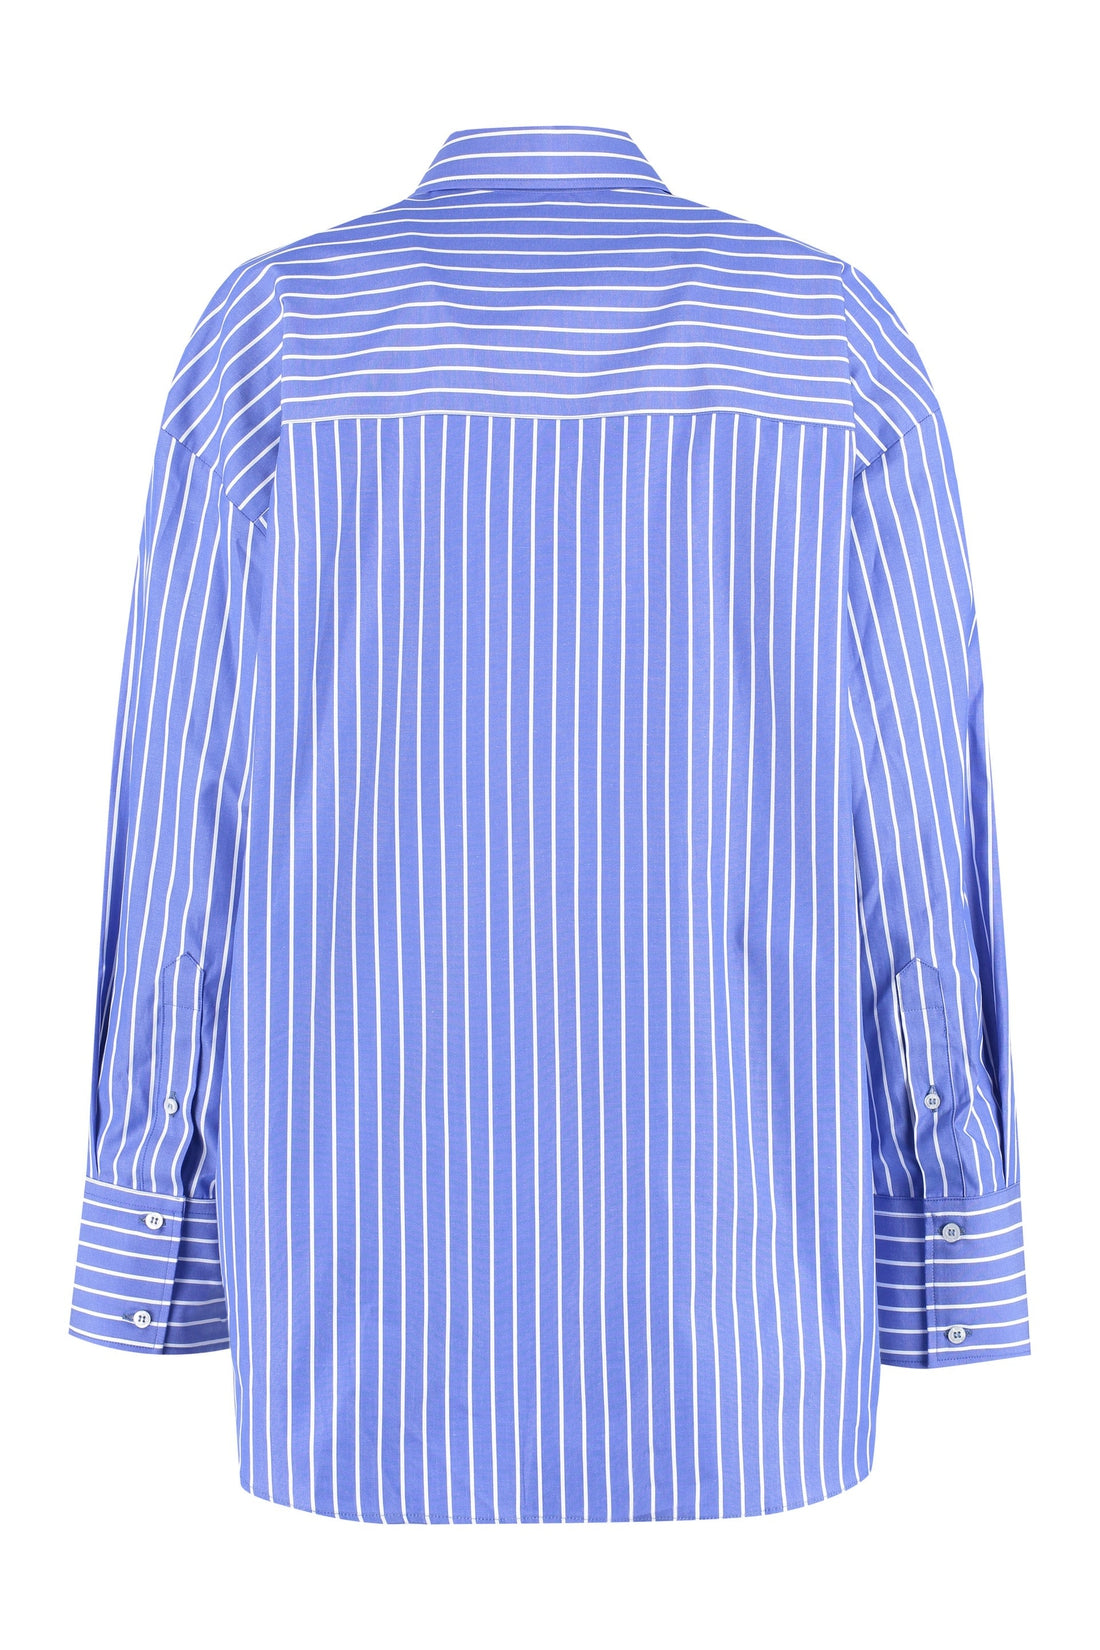 MSGM-OUTLET-SALE-Striped cotton shirt-ARCHIVIST